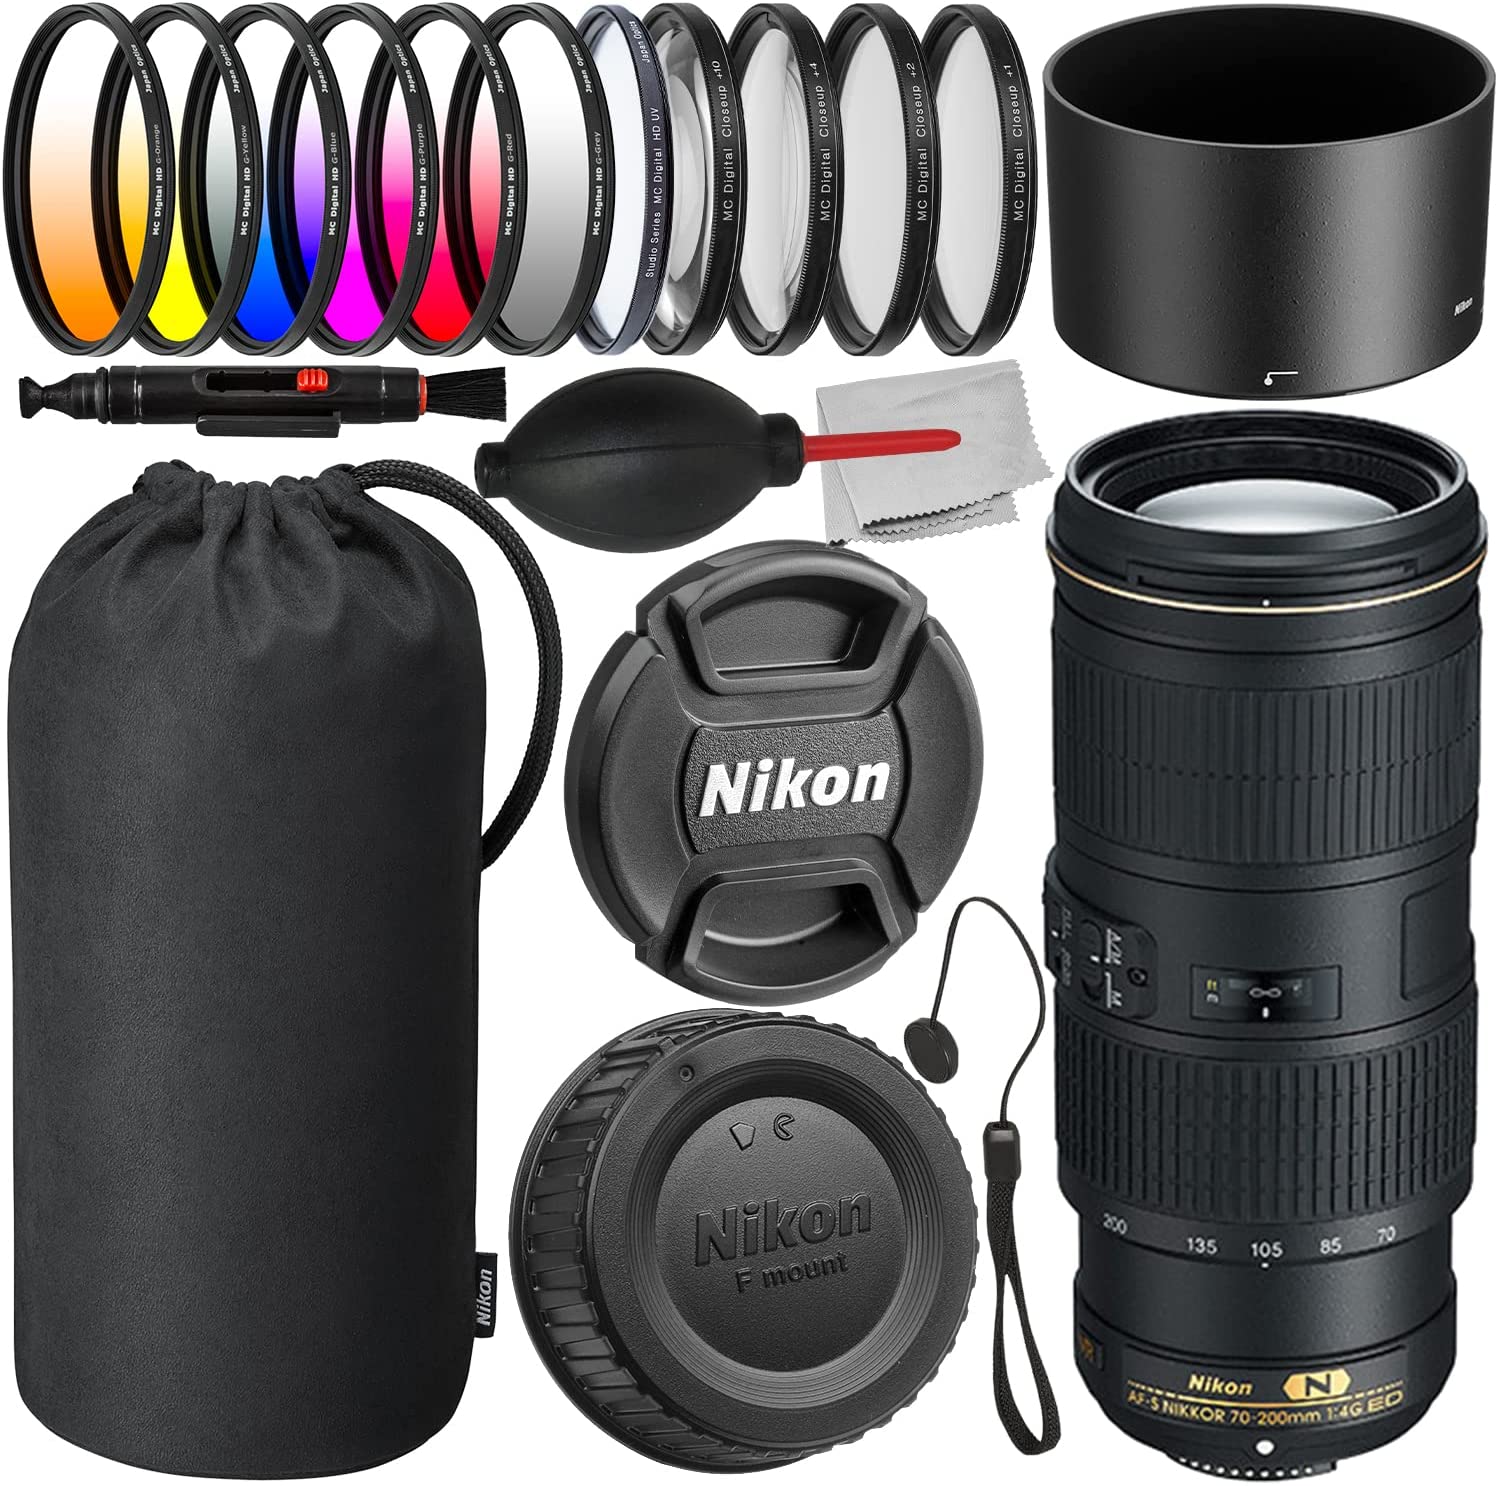 Nikon AF-S NIKKOR 70-200mm f/4G ED VR Lens + 6PC Gradual Color Filter Kit, 4PC Macro Close-Up Filter Kit, Multi-Coated Digital HD UV Filter, Universal Lens Cap Keeper & More (20pc Bundle)